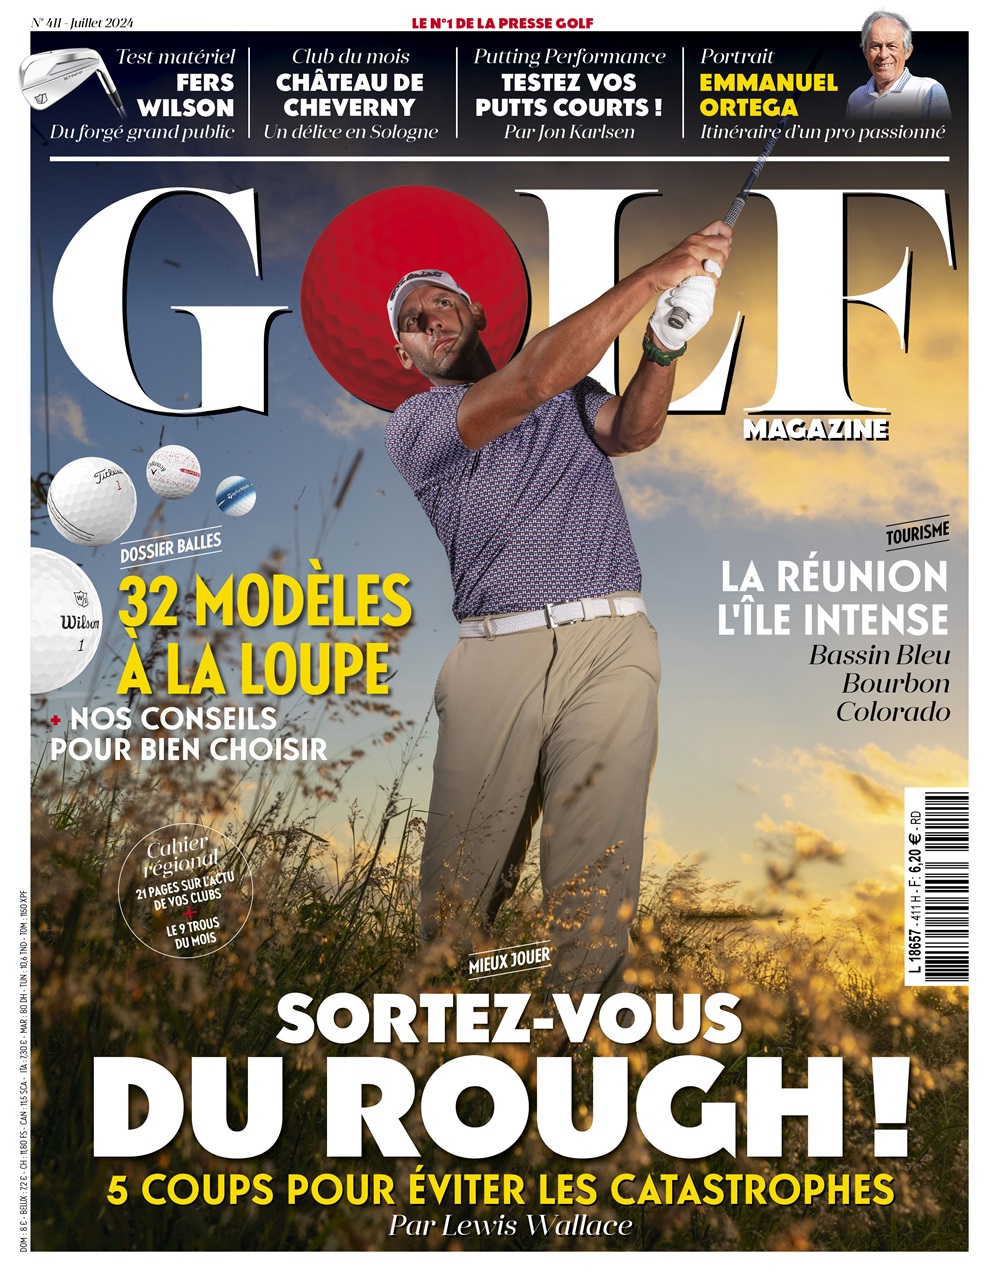 Golf Magazine n°411 : sortez-vous du rough !